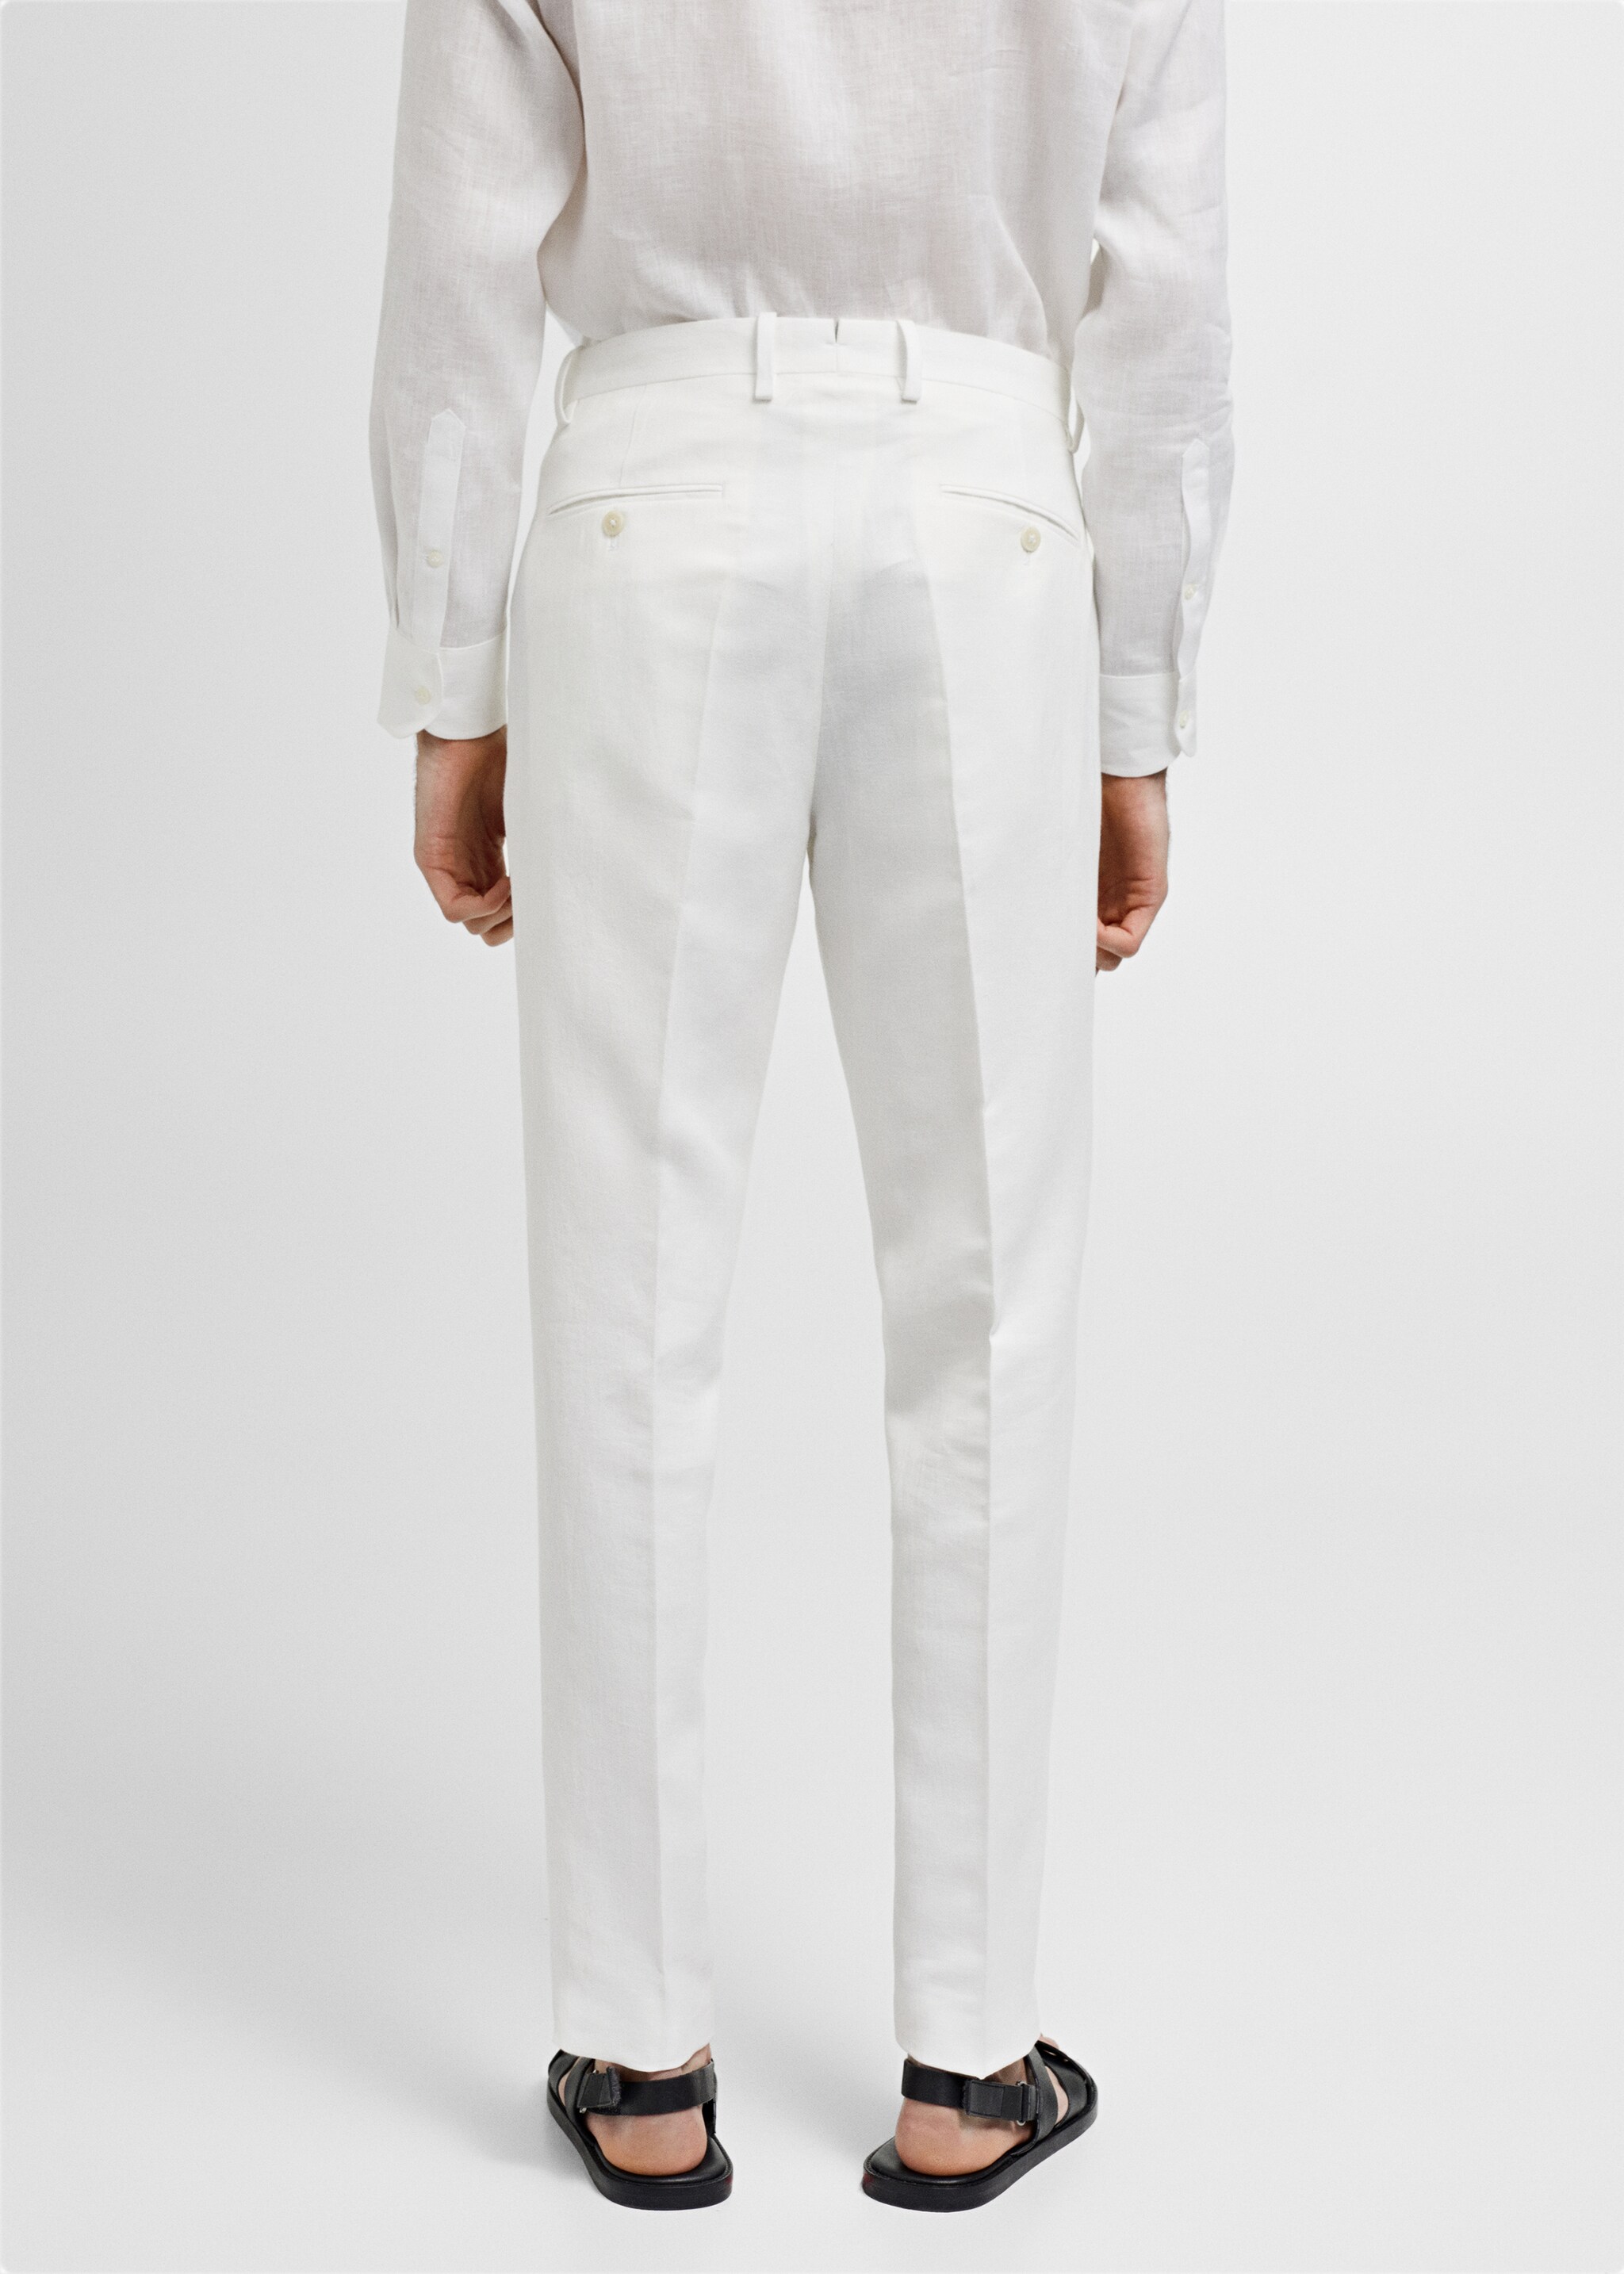 Pantalón traje slim fit algodón lino - Reverso del artículo